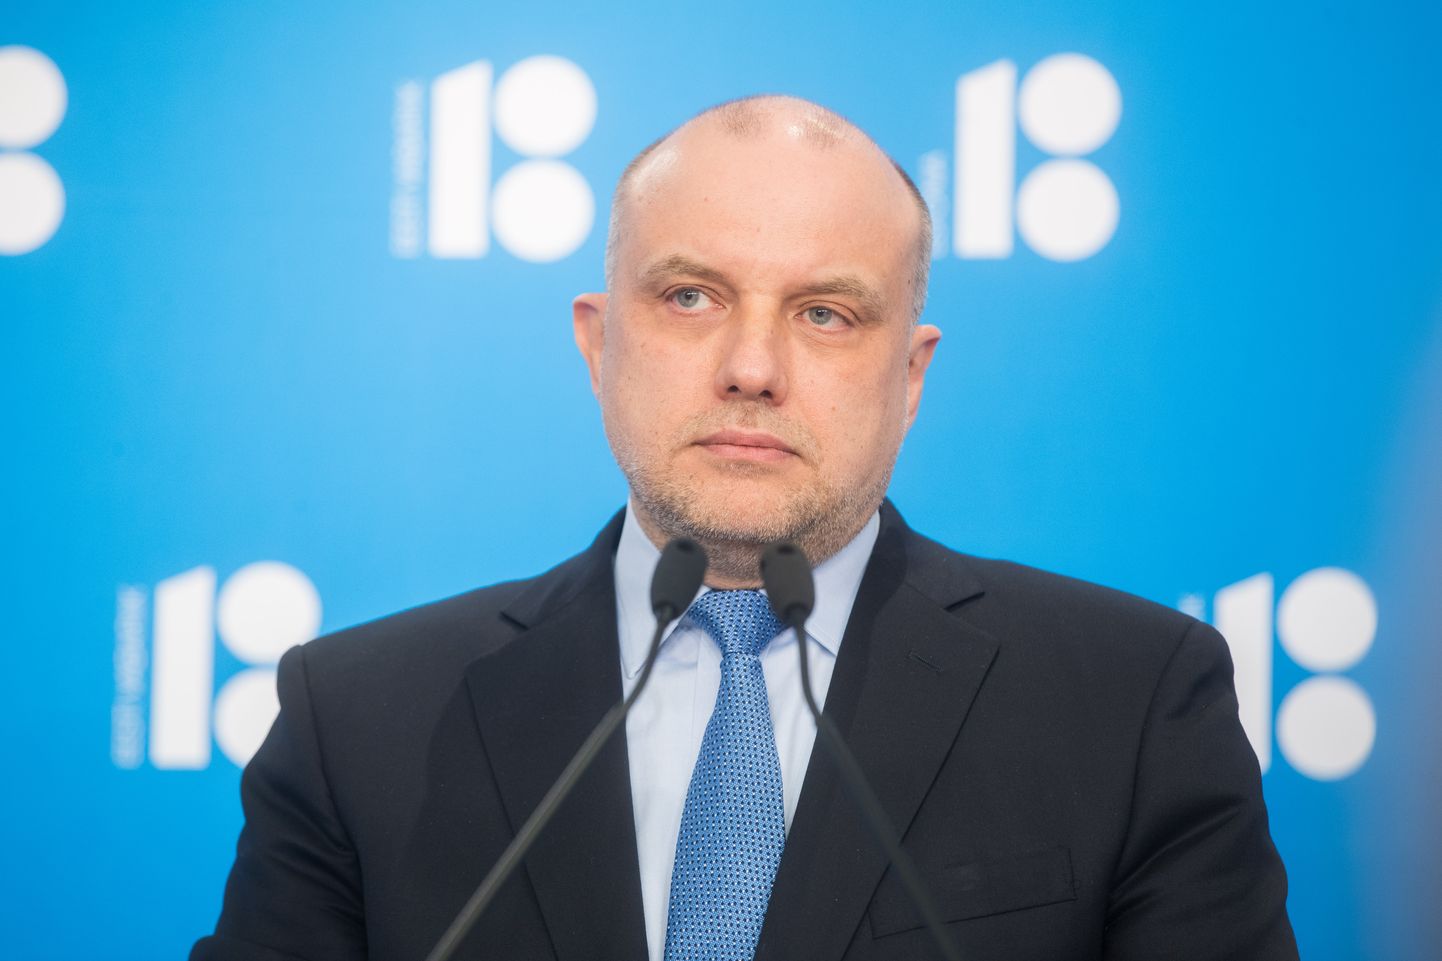 Igaunijas aizsardzības ministrs Jiri Luiks 